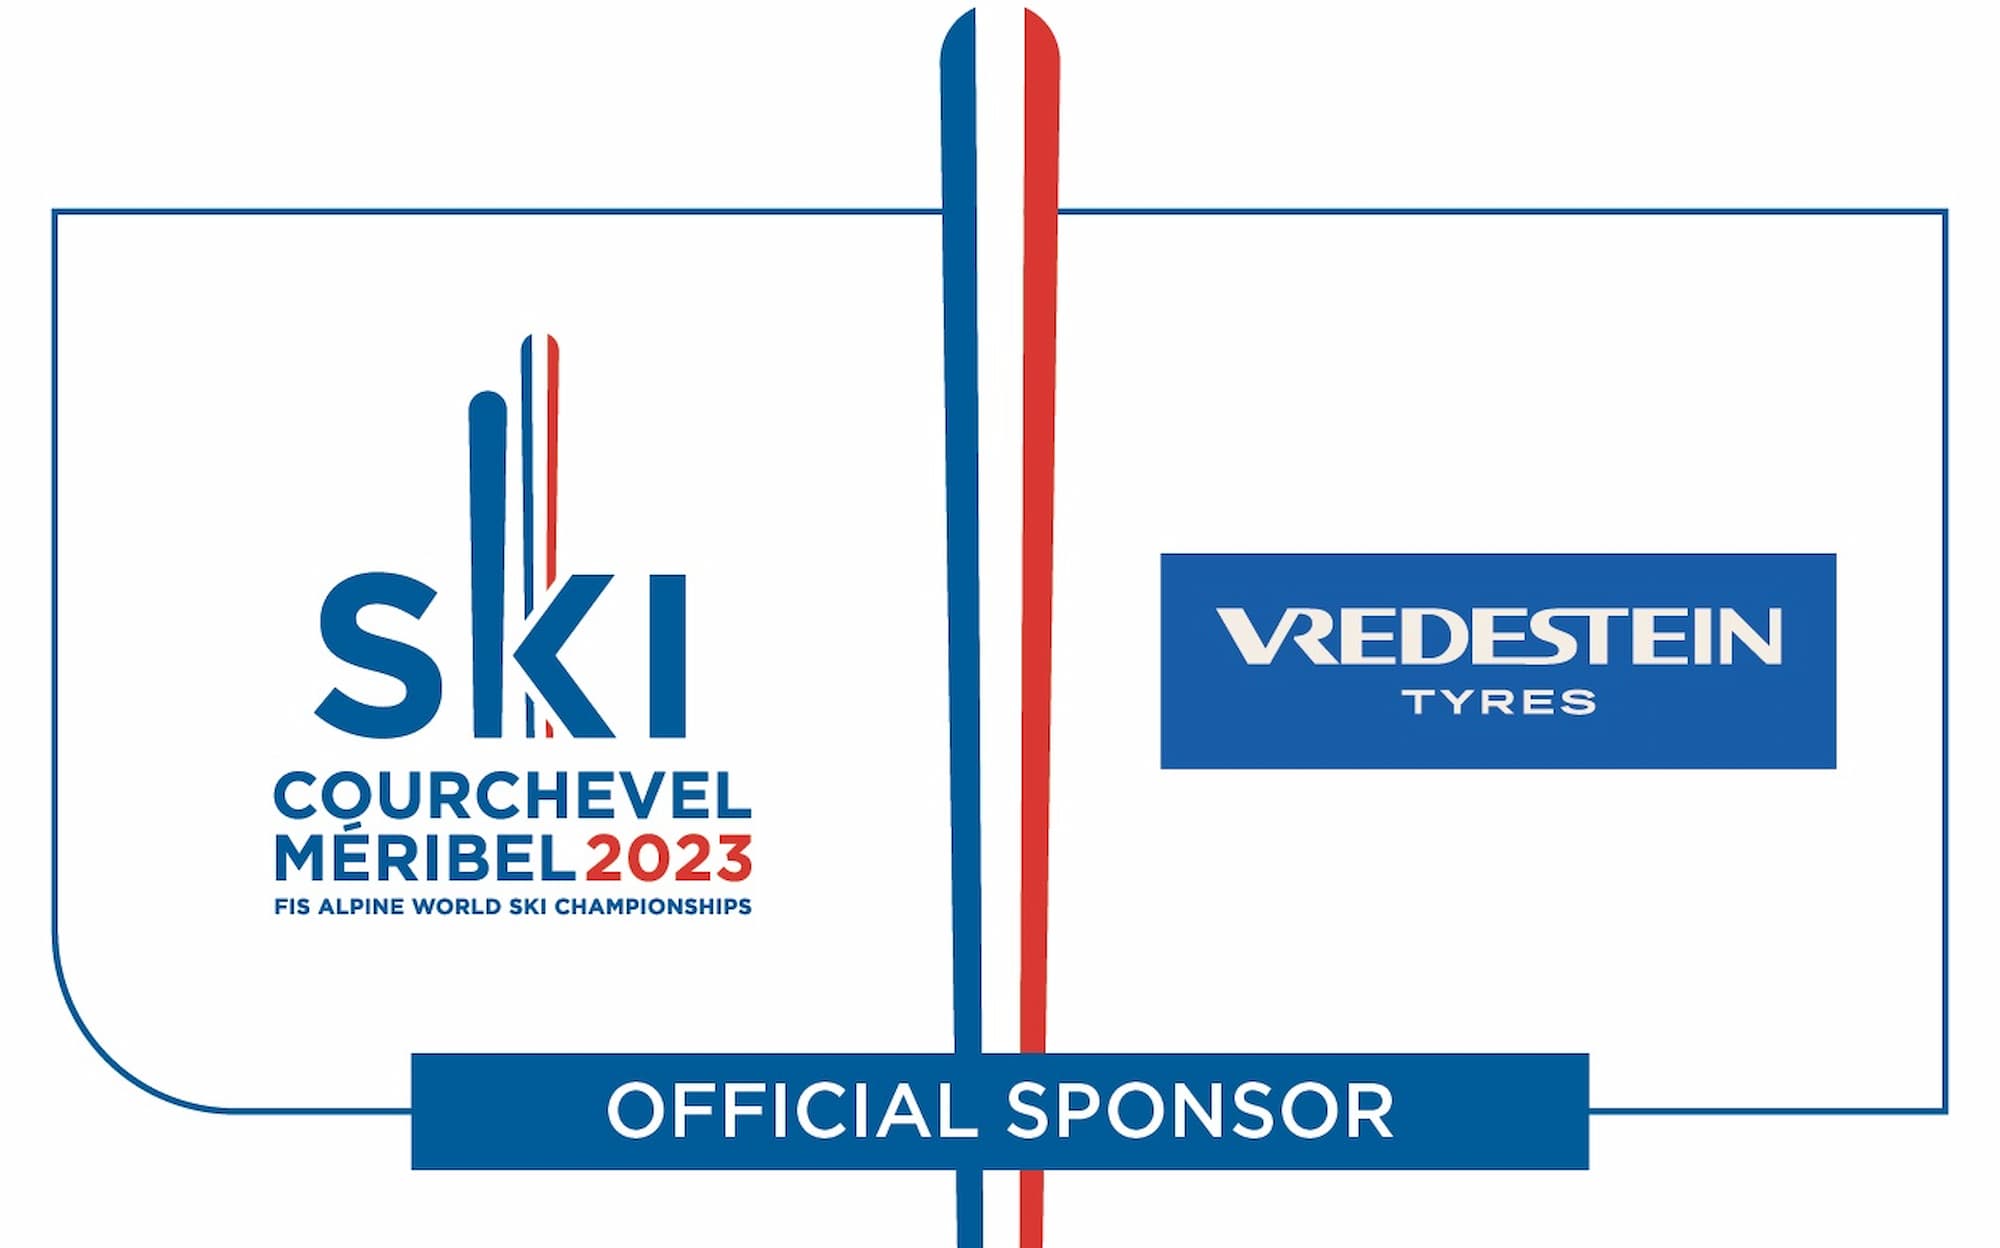 Vredestein patrocinador del Campeonato Mundial de Esquí Alpino 2023